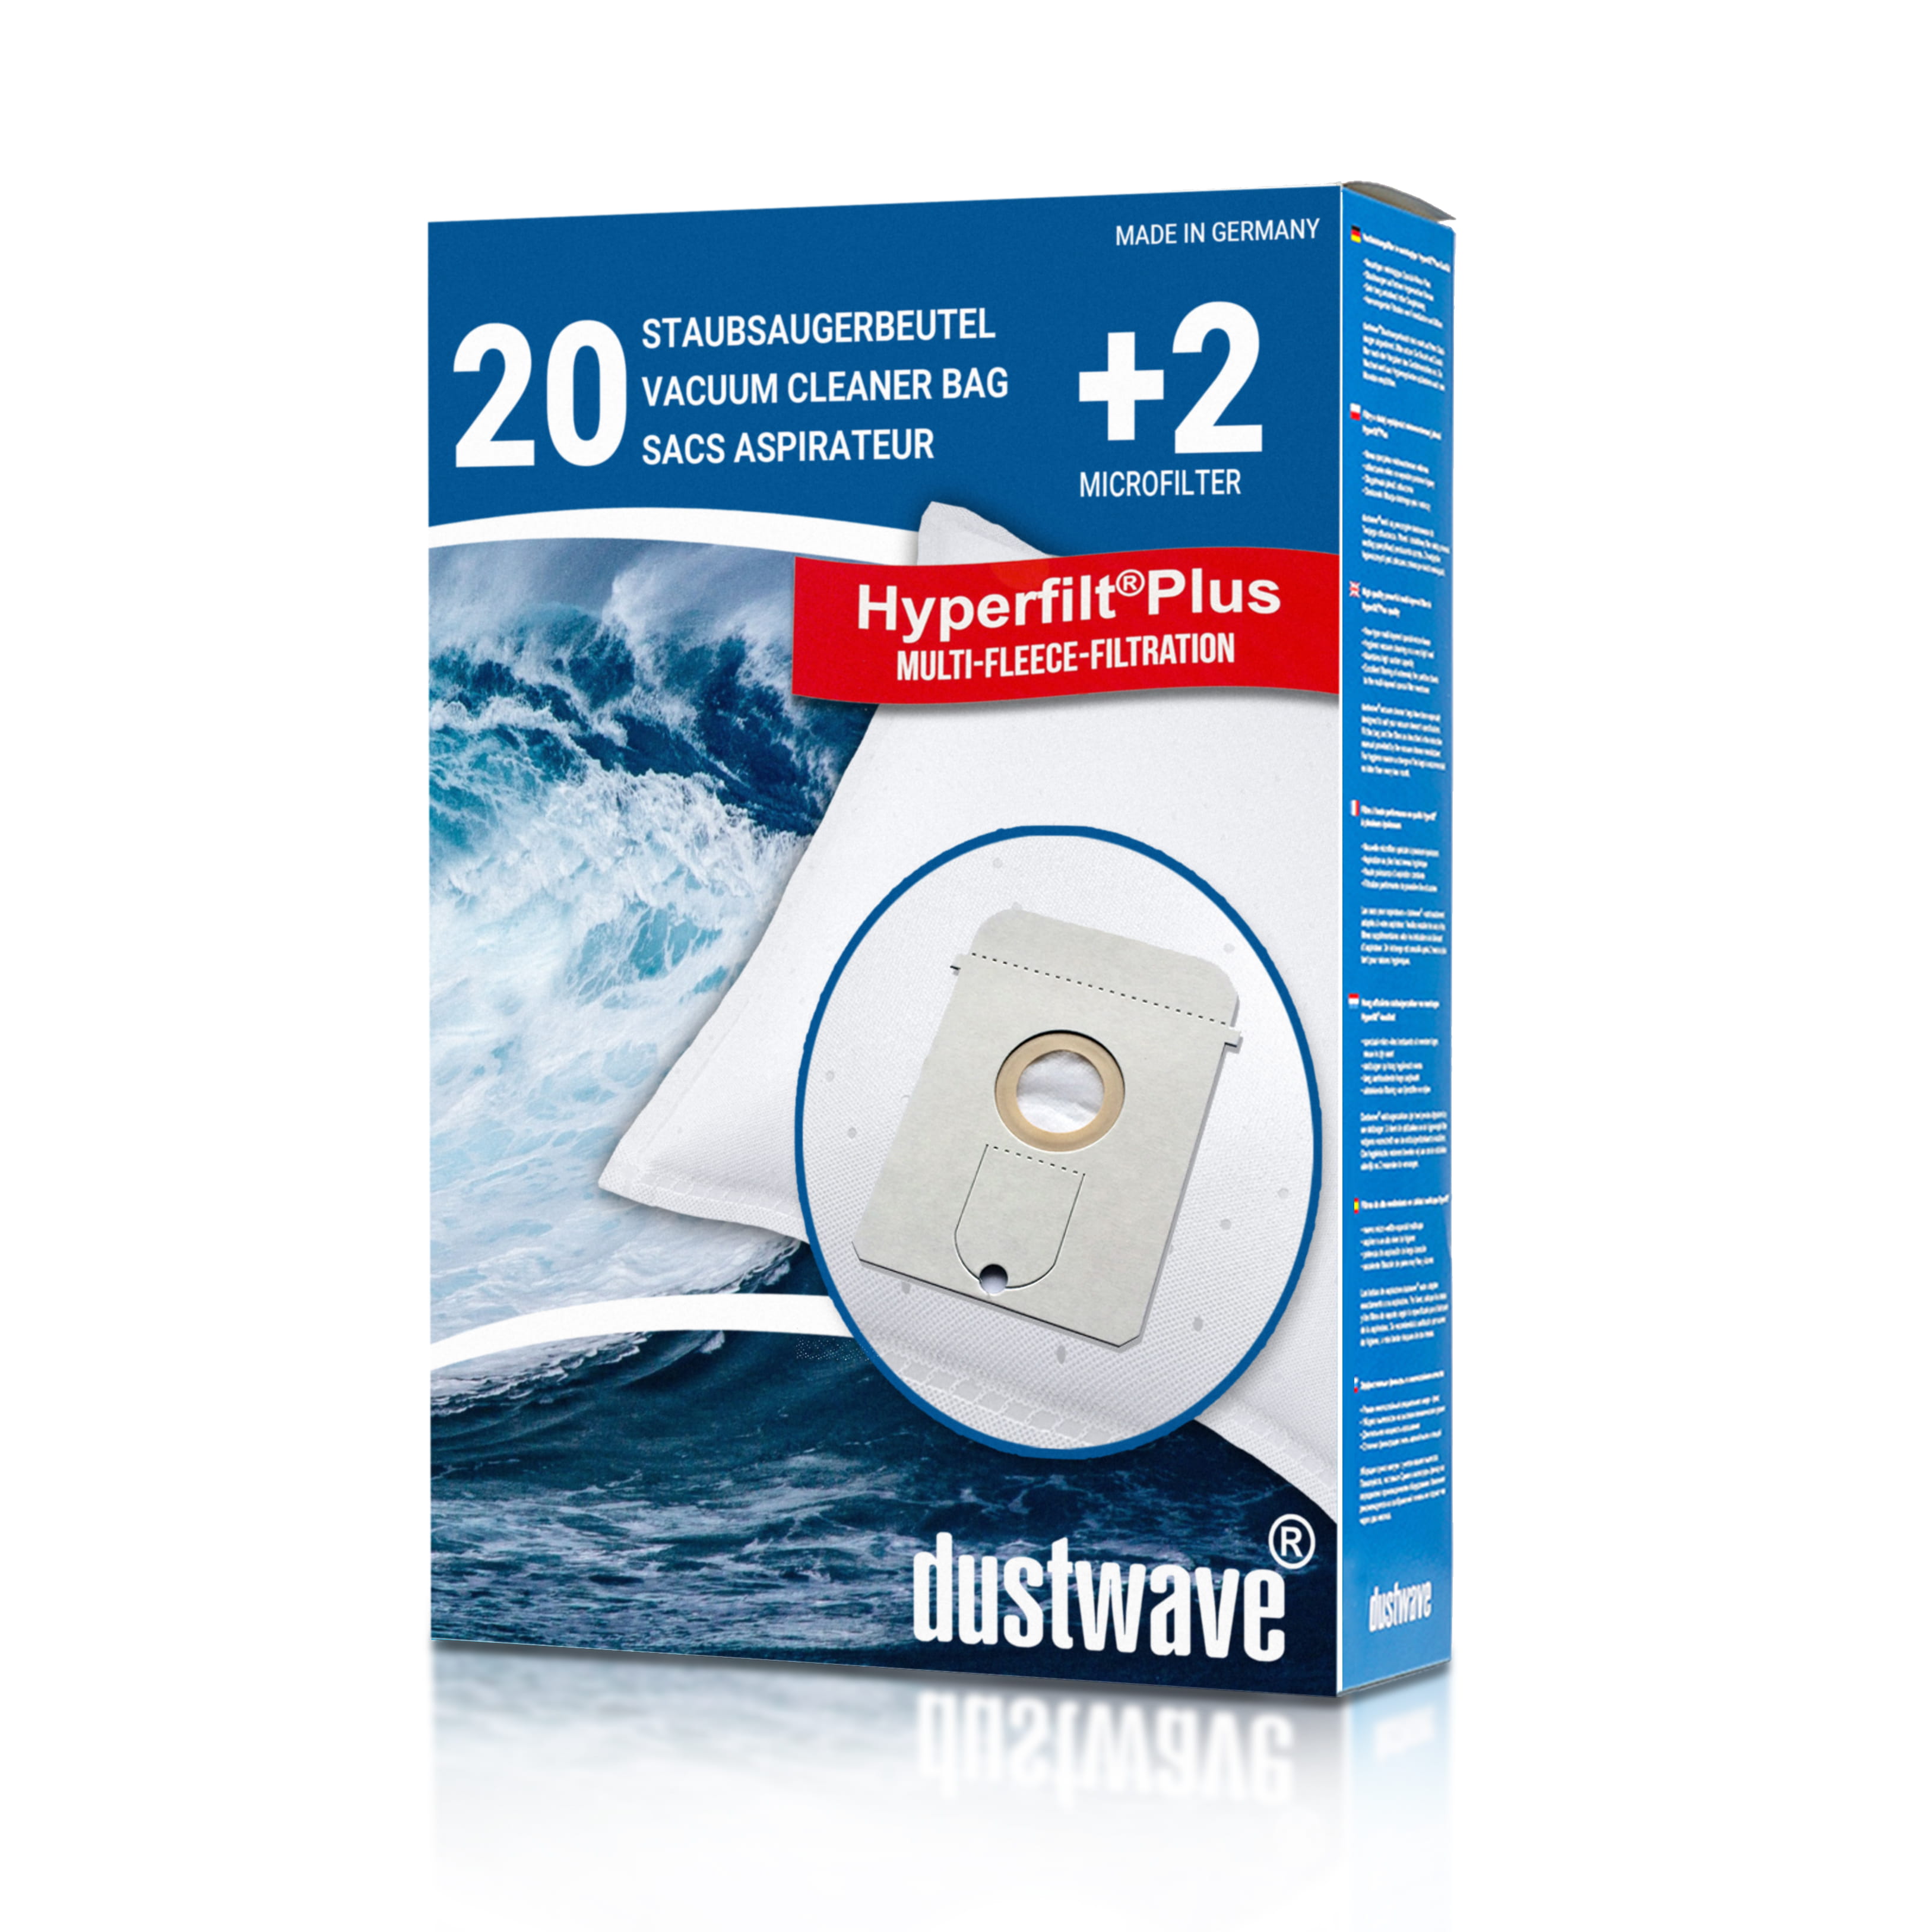 Dustwave® 20 Staubsaugerbeutel für AEG Vampyr TC 310 / 315 / 320 / 325 / 3209 - hocheffizient, mehrlagiges Mikrovlies mit Hygieneverschluss - Made in Germany